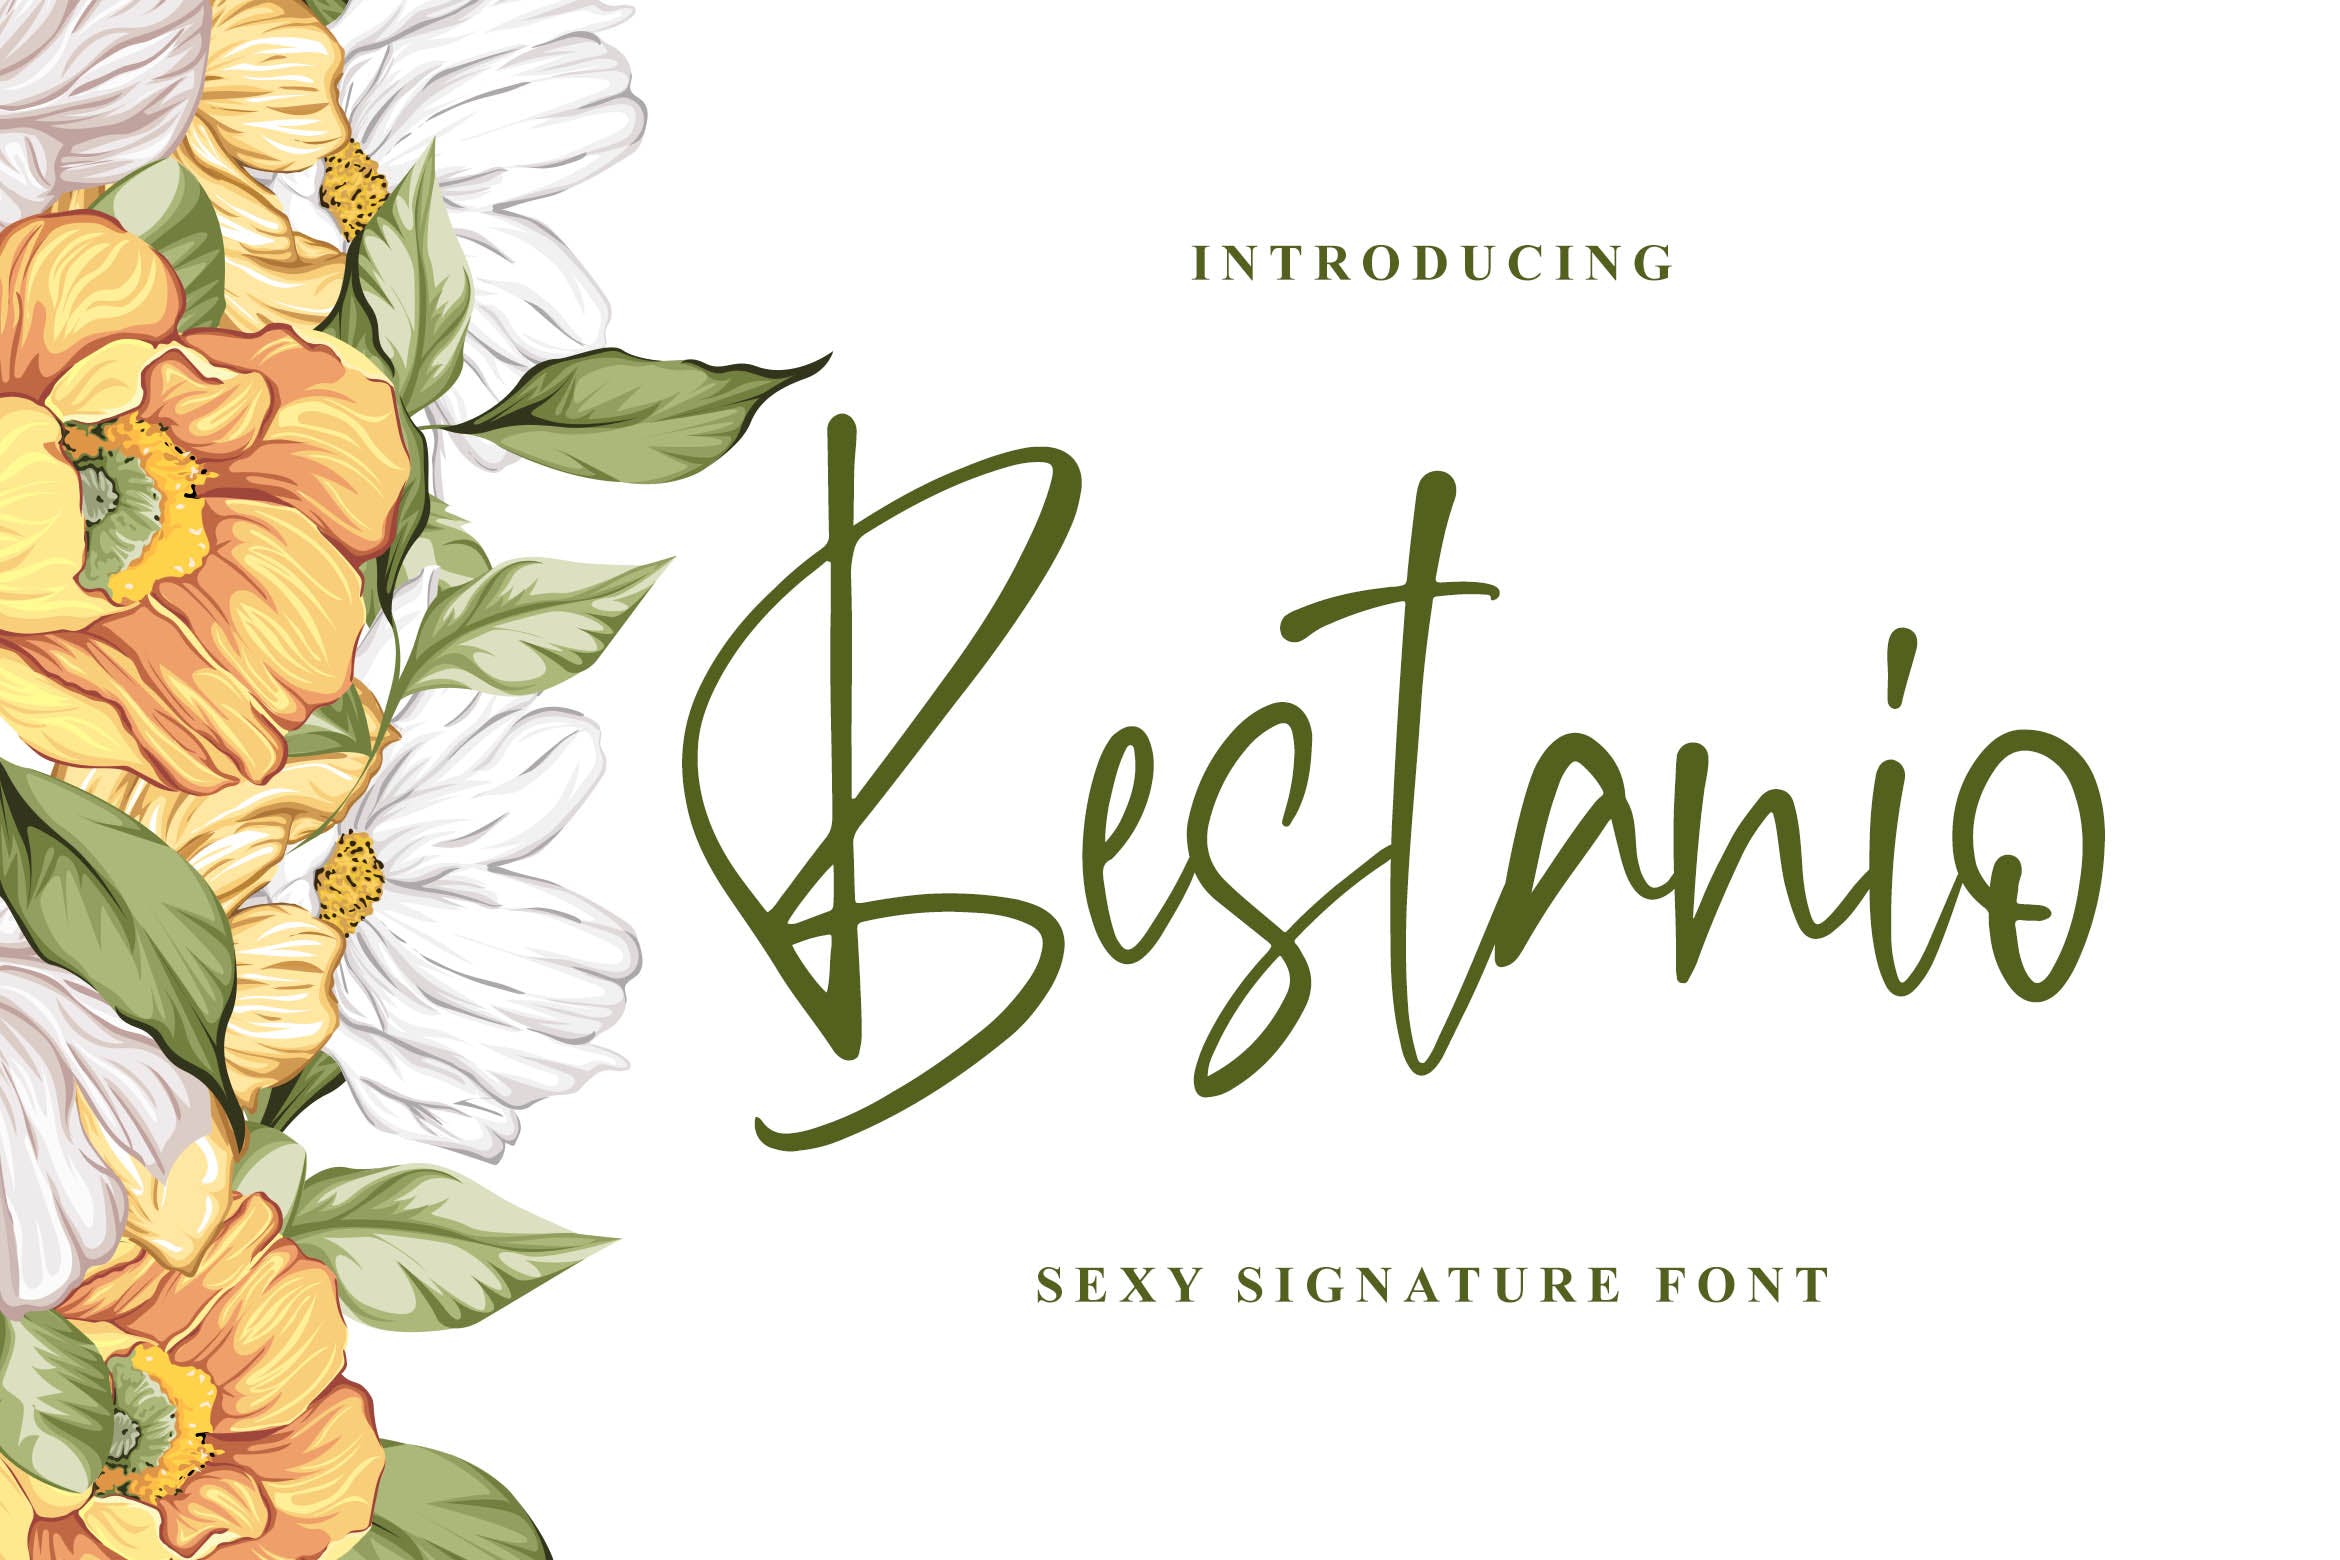 性感时尚英文签名字体非凡图库精选 Bestanio – Sexy Signature Font插图